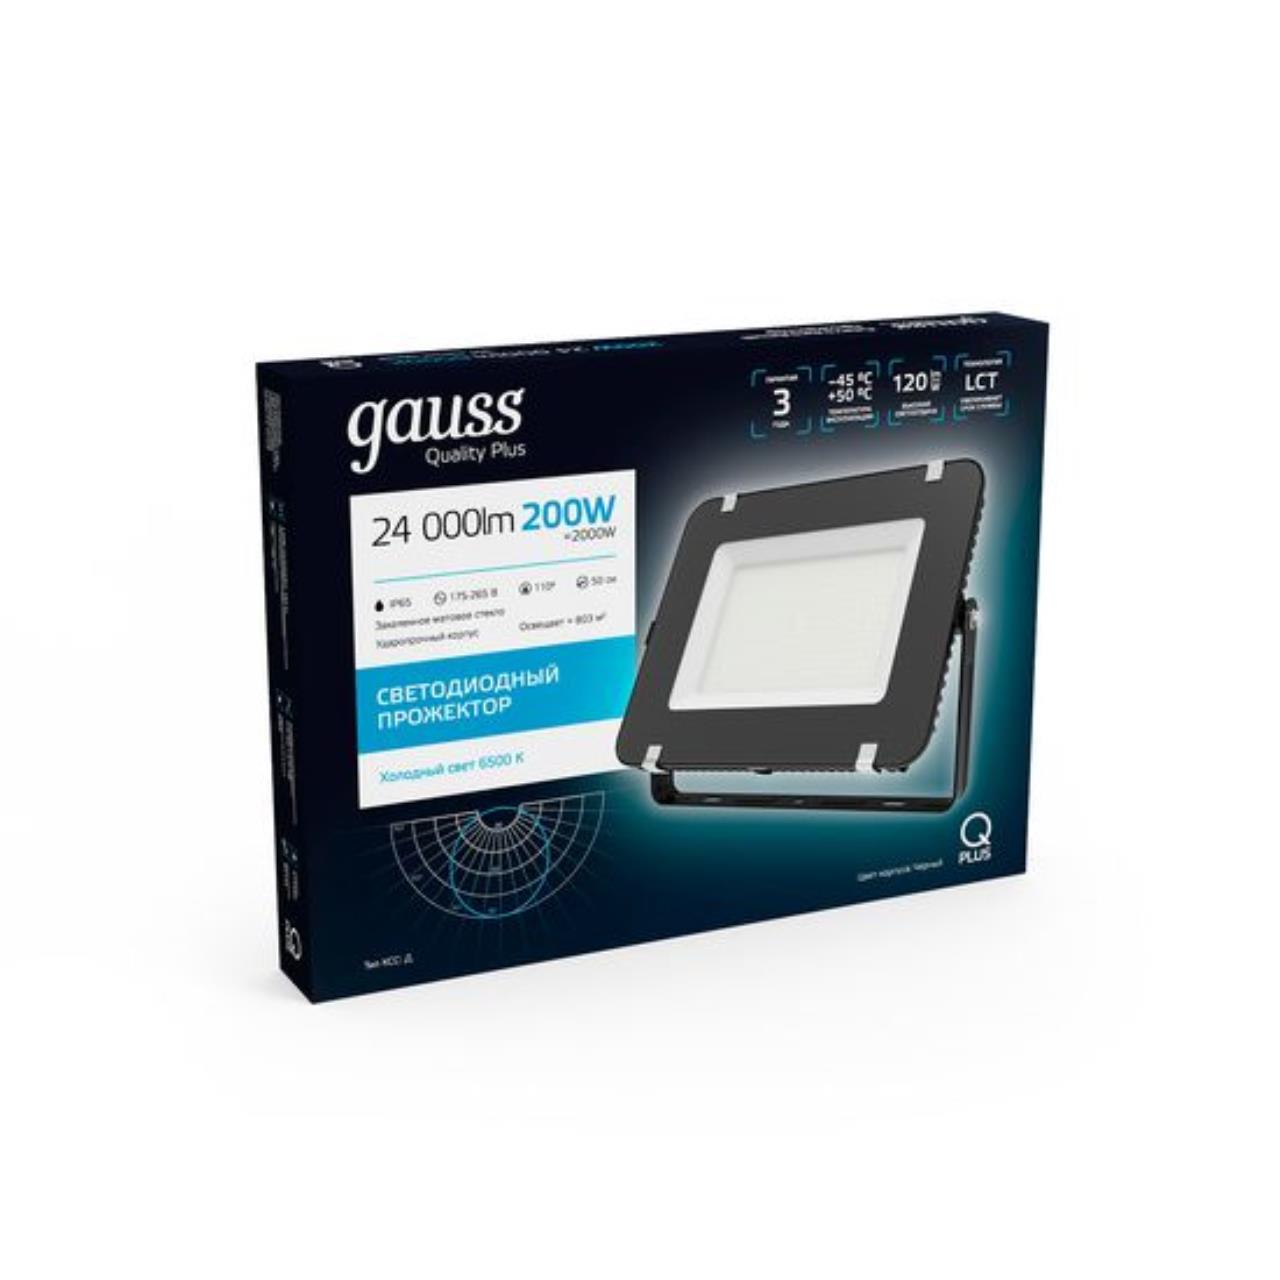 613100200 Прожектор Gauss Qplus 200W 24000lm 6500K 175-265V IP65 черный LED 1/2